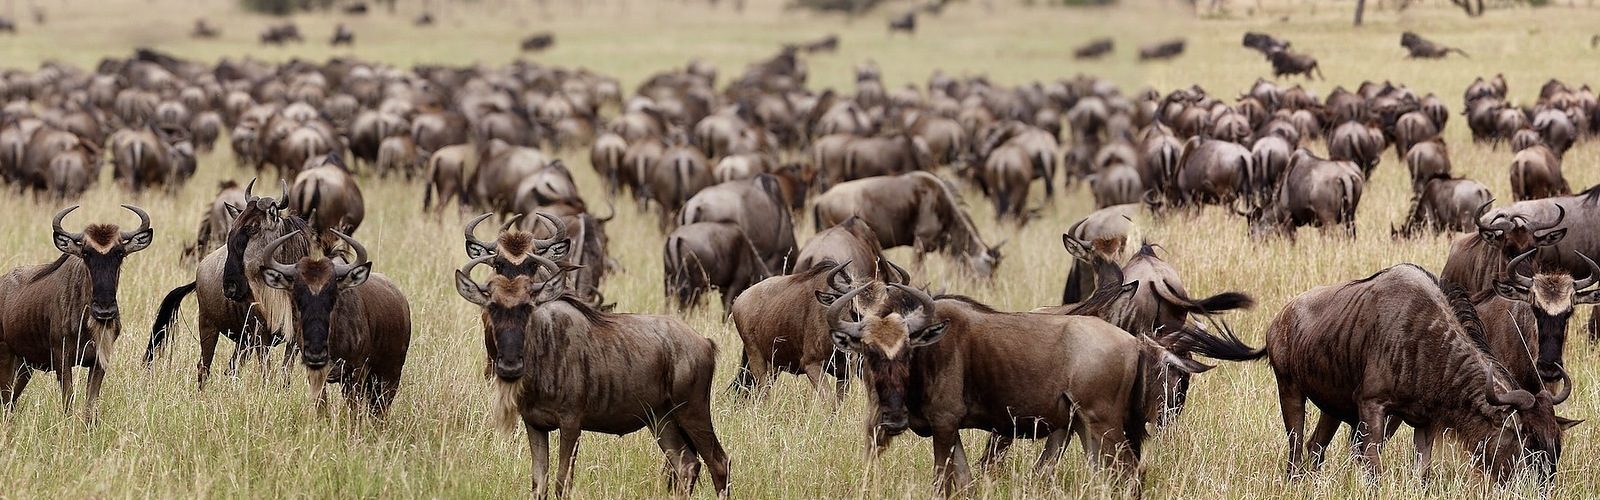 wildebeest serengeti